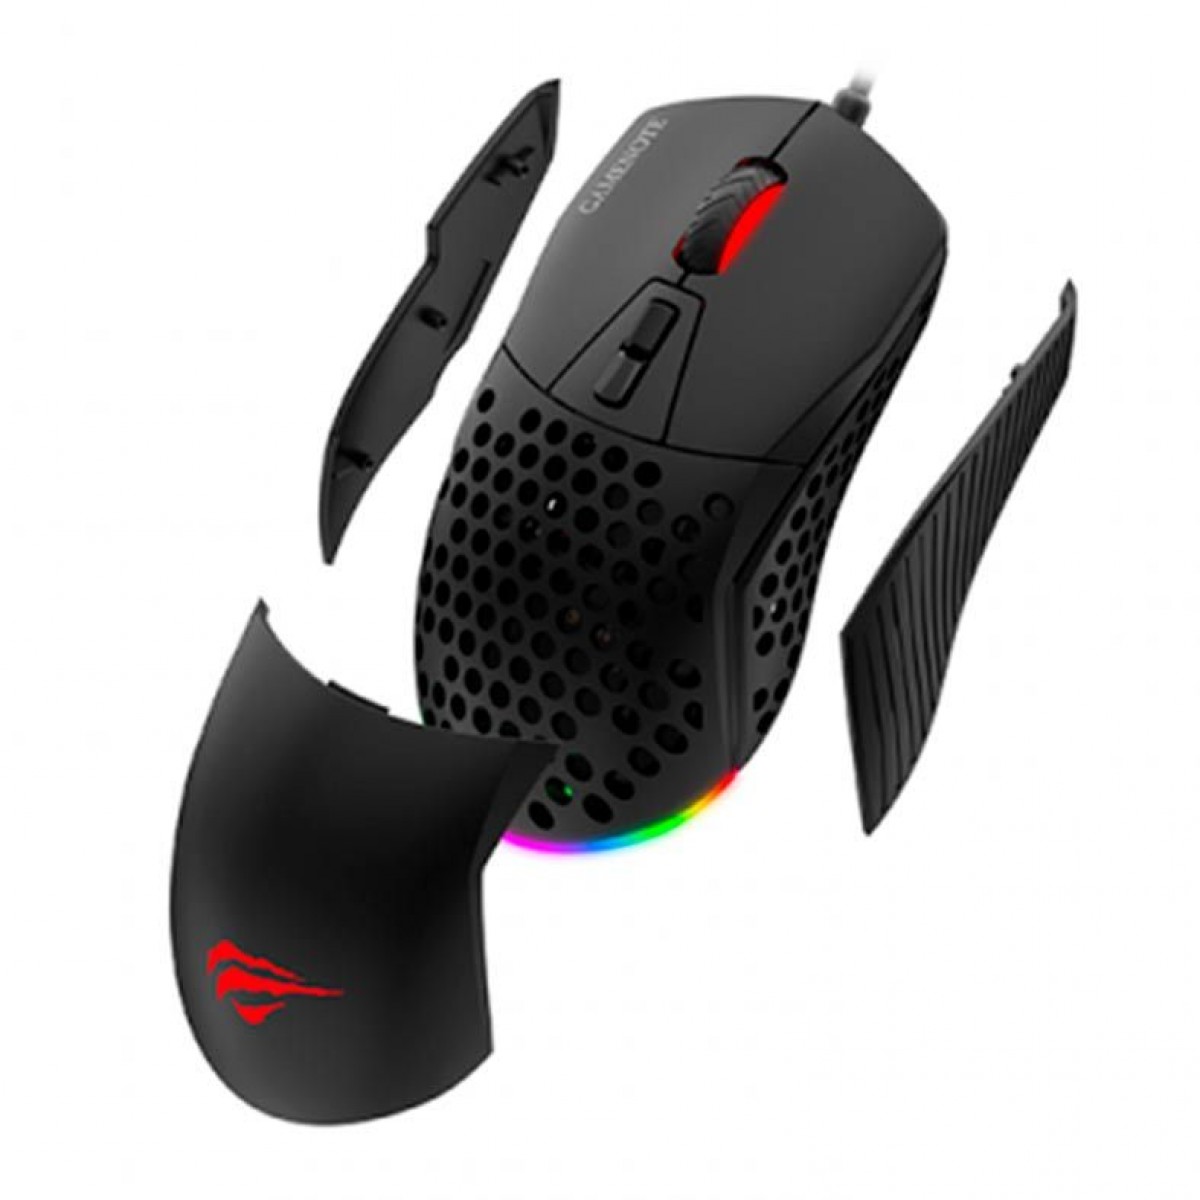 Mouse Gamer Havit MS885, 10000 DPI, 7 Botões, RGB, Black